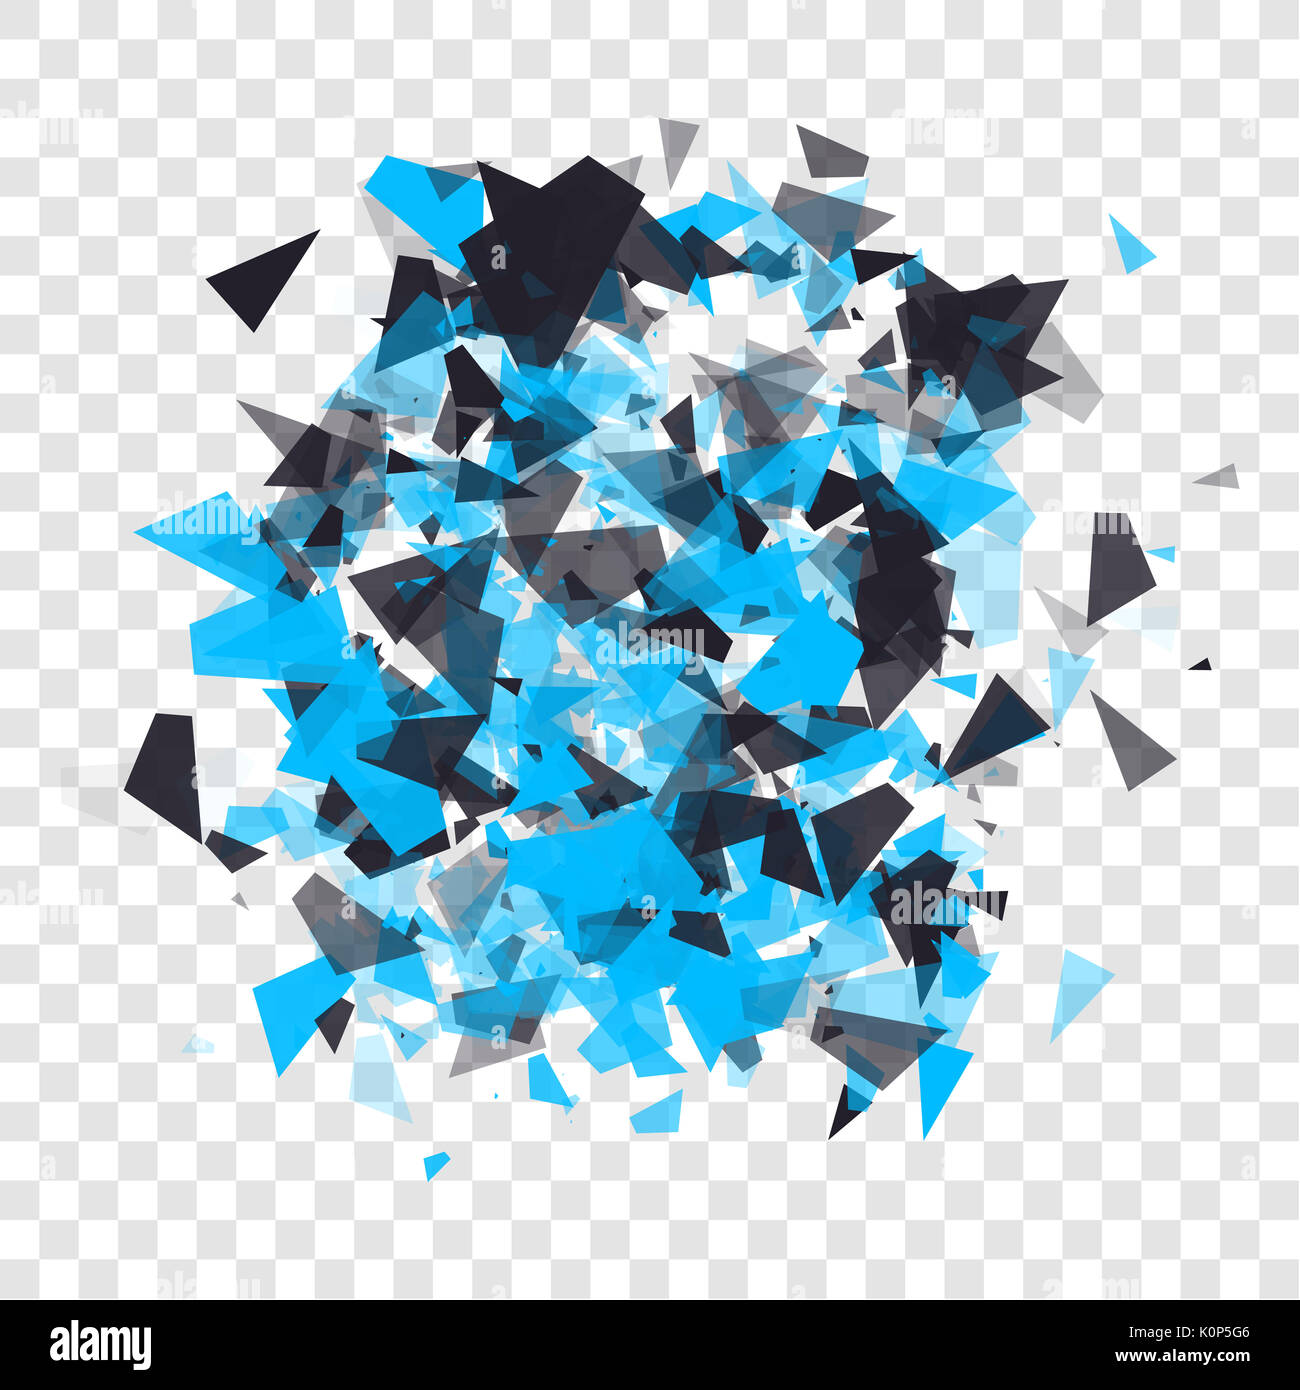 Abstract triangles particules avec ombres transparentes. Panneau publicitaire, infographie, élément de base concept showcase. Explosion de nuage noir et bleu sur fond transparent. Banque D'Images